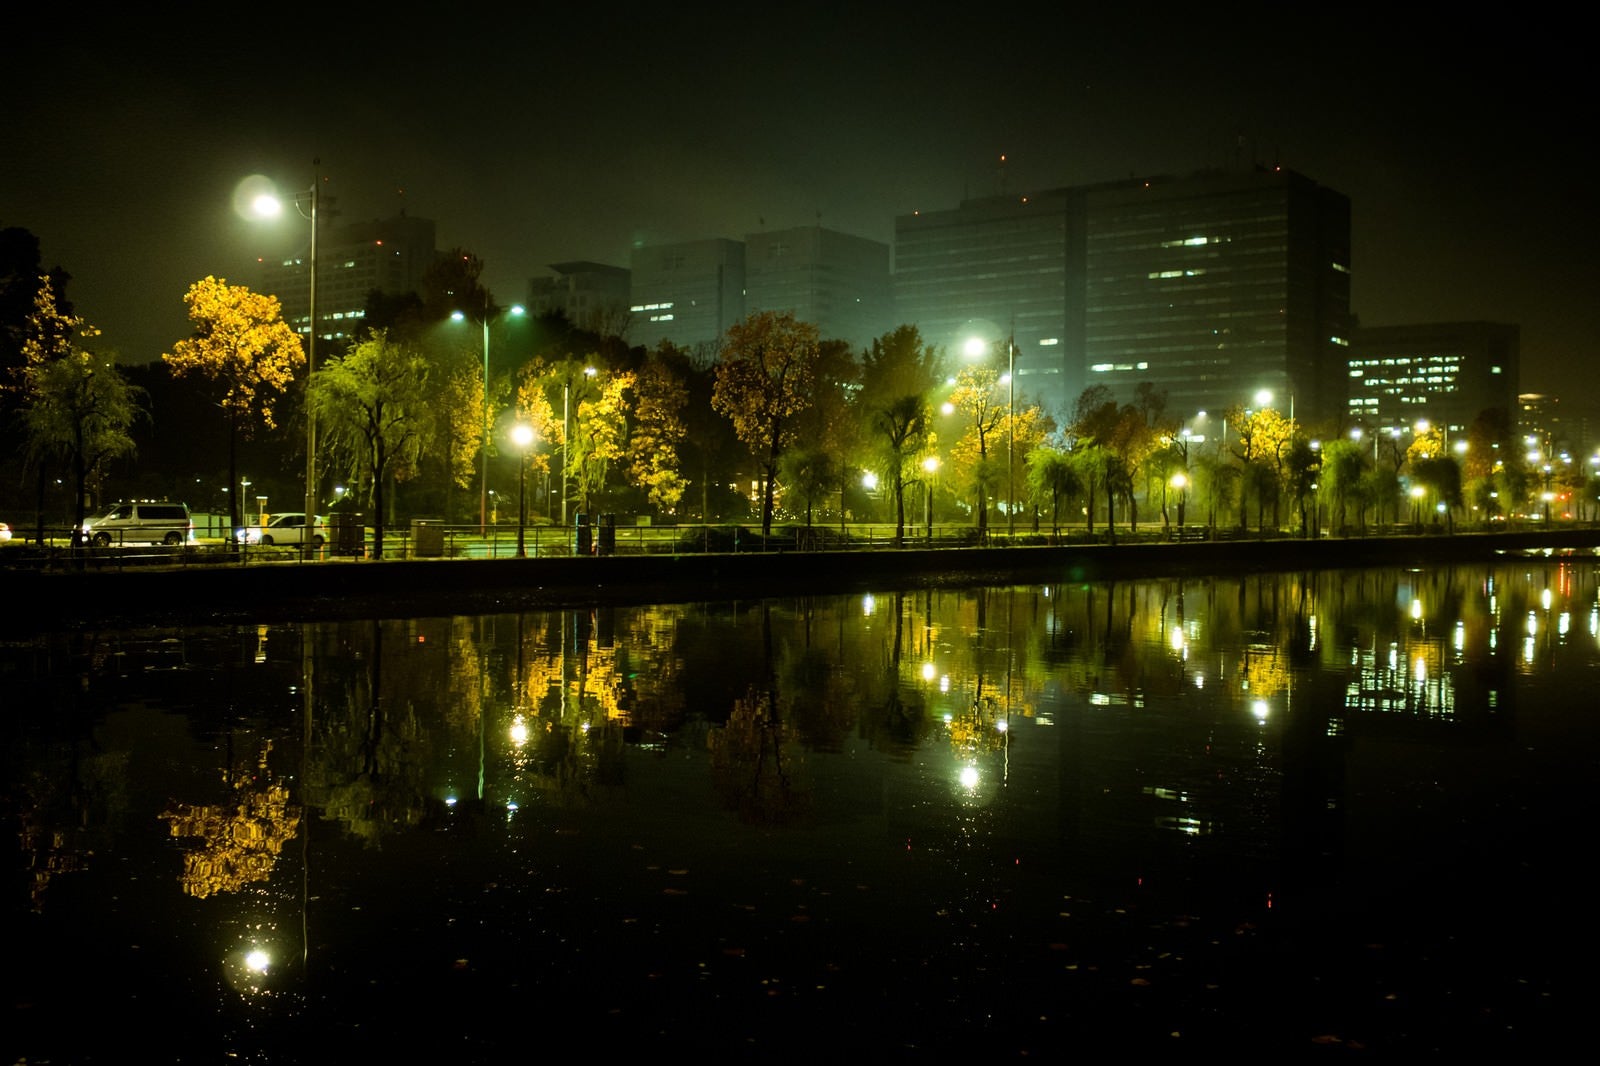 「水面に映り込む皇居の堀とビル群の夜景」の写真